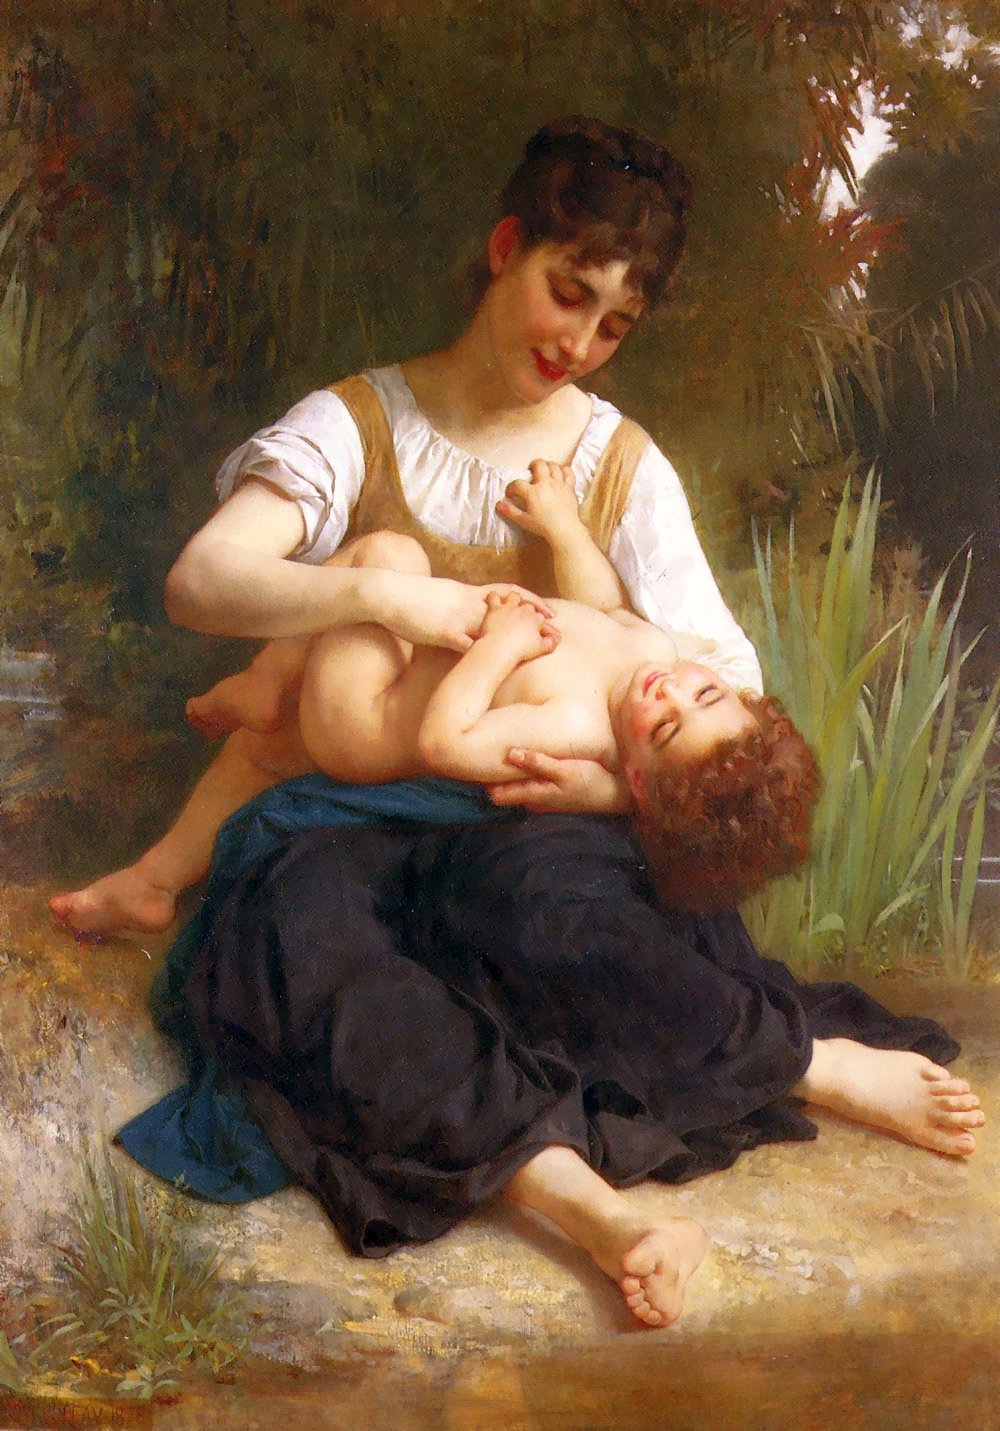 Adolphus Enfant et Adolescent - William Bouguereau